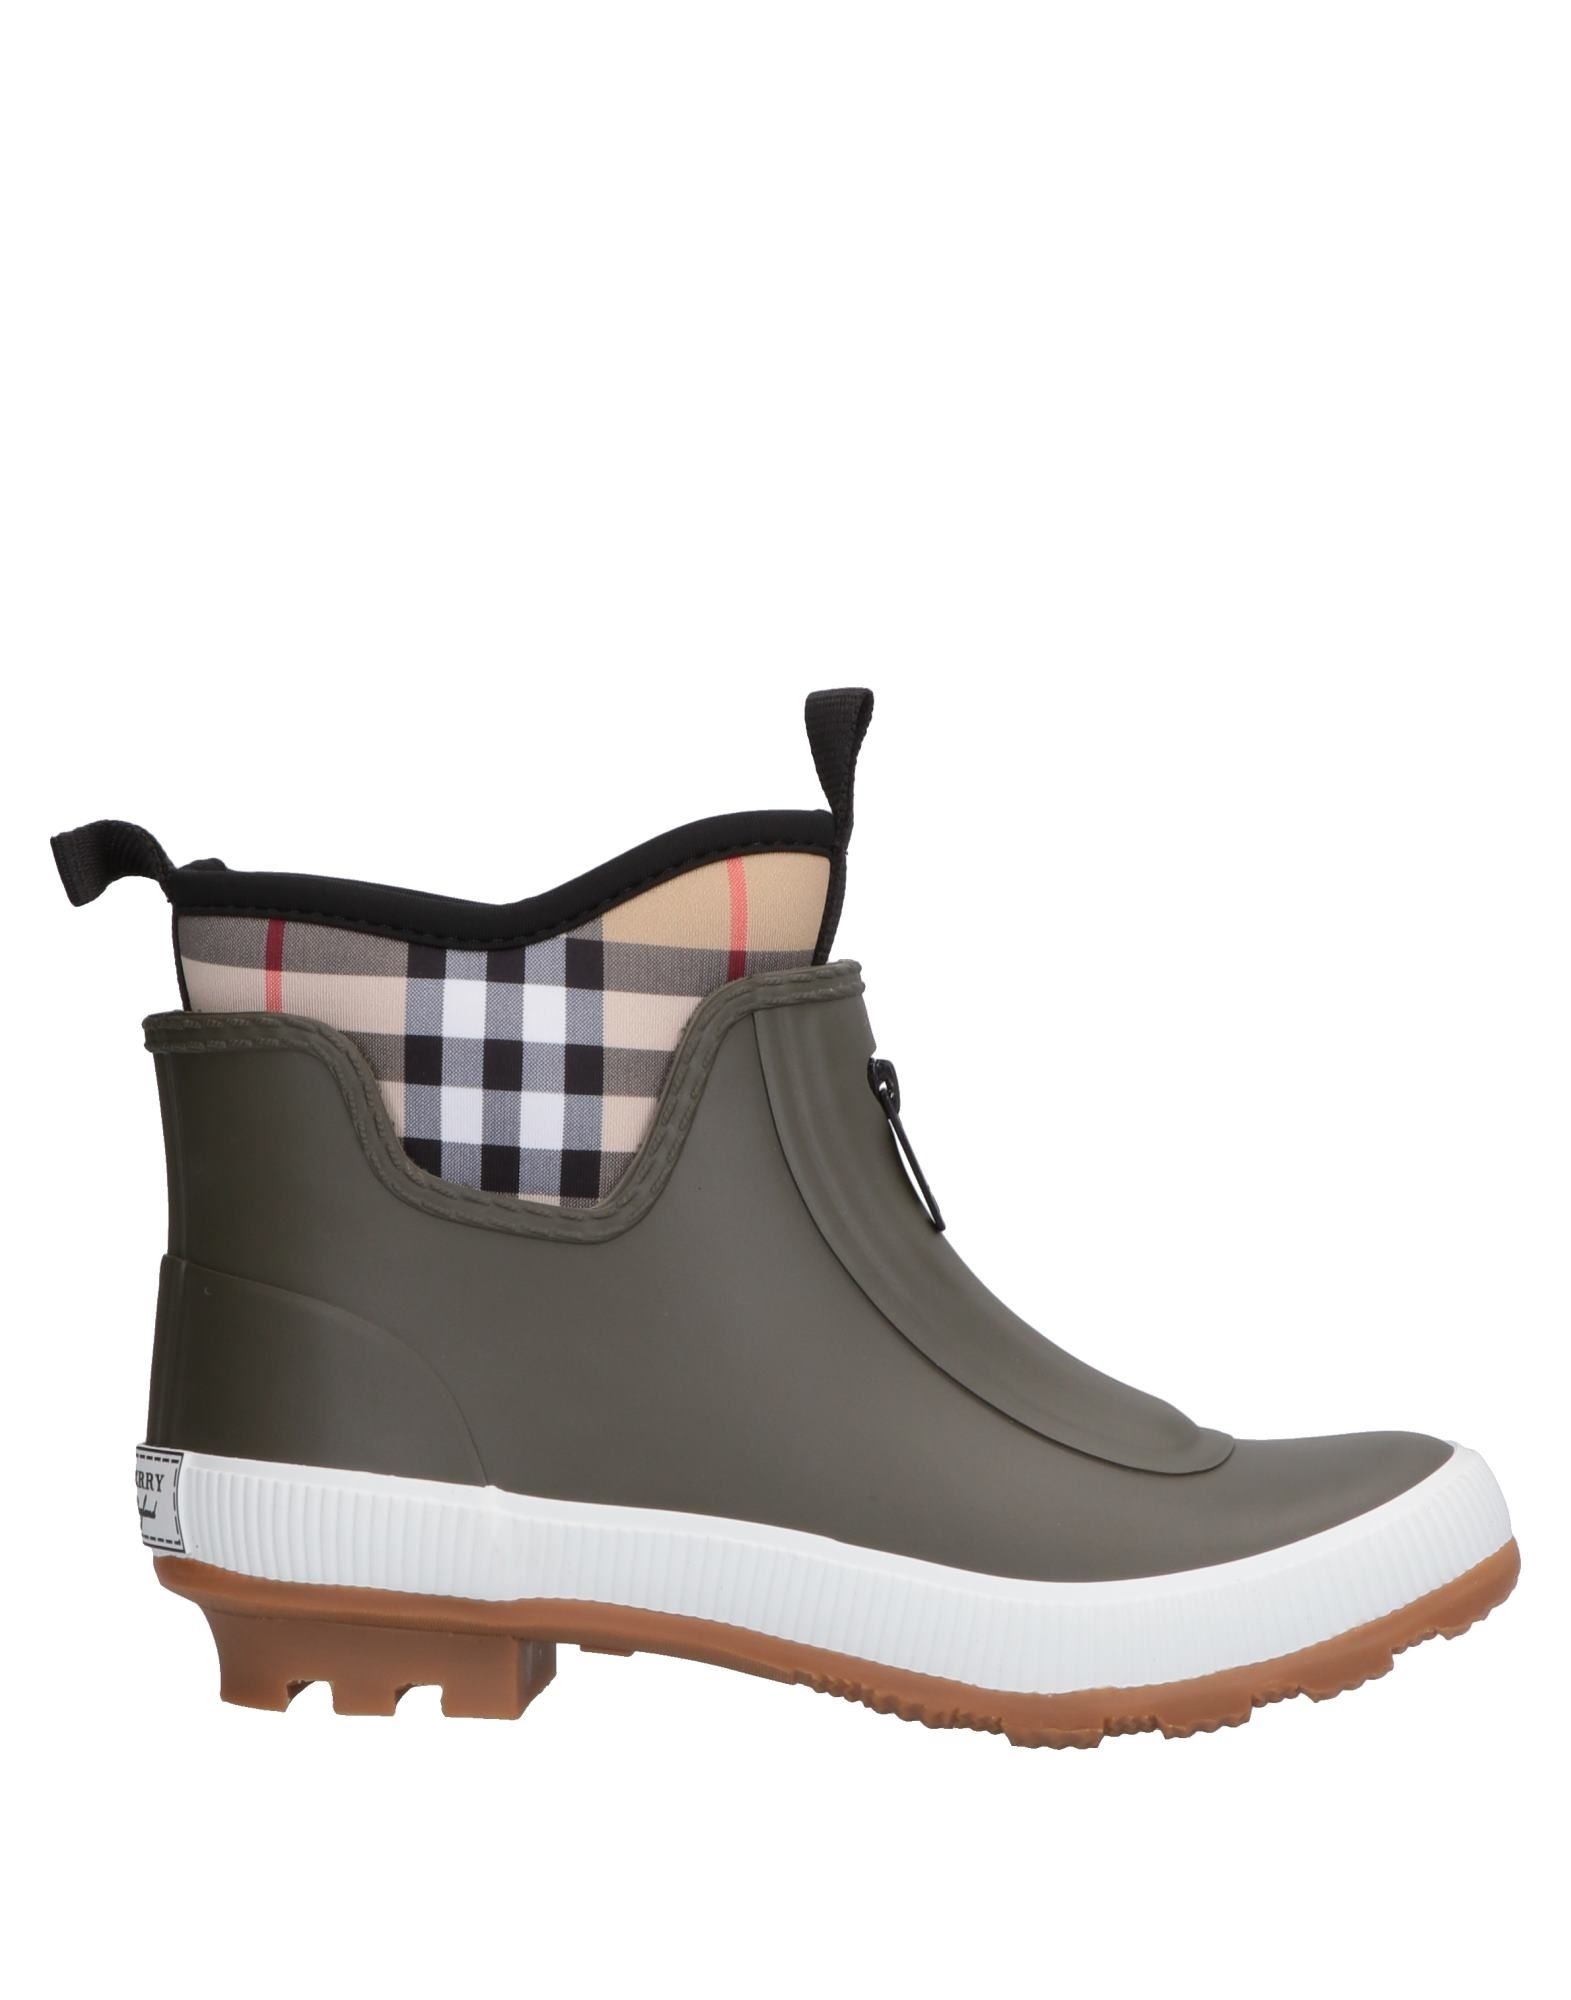 buy burberry boots online